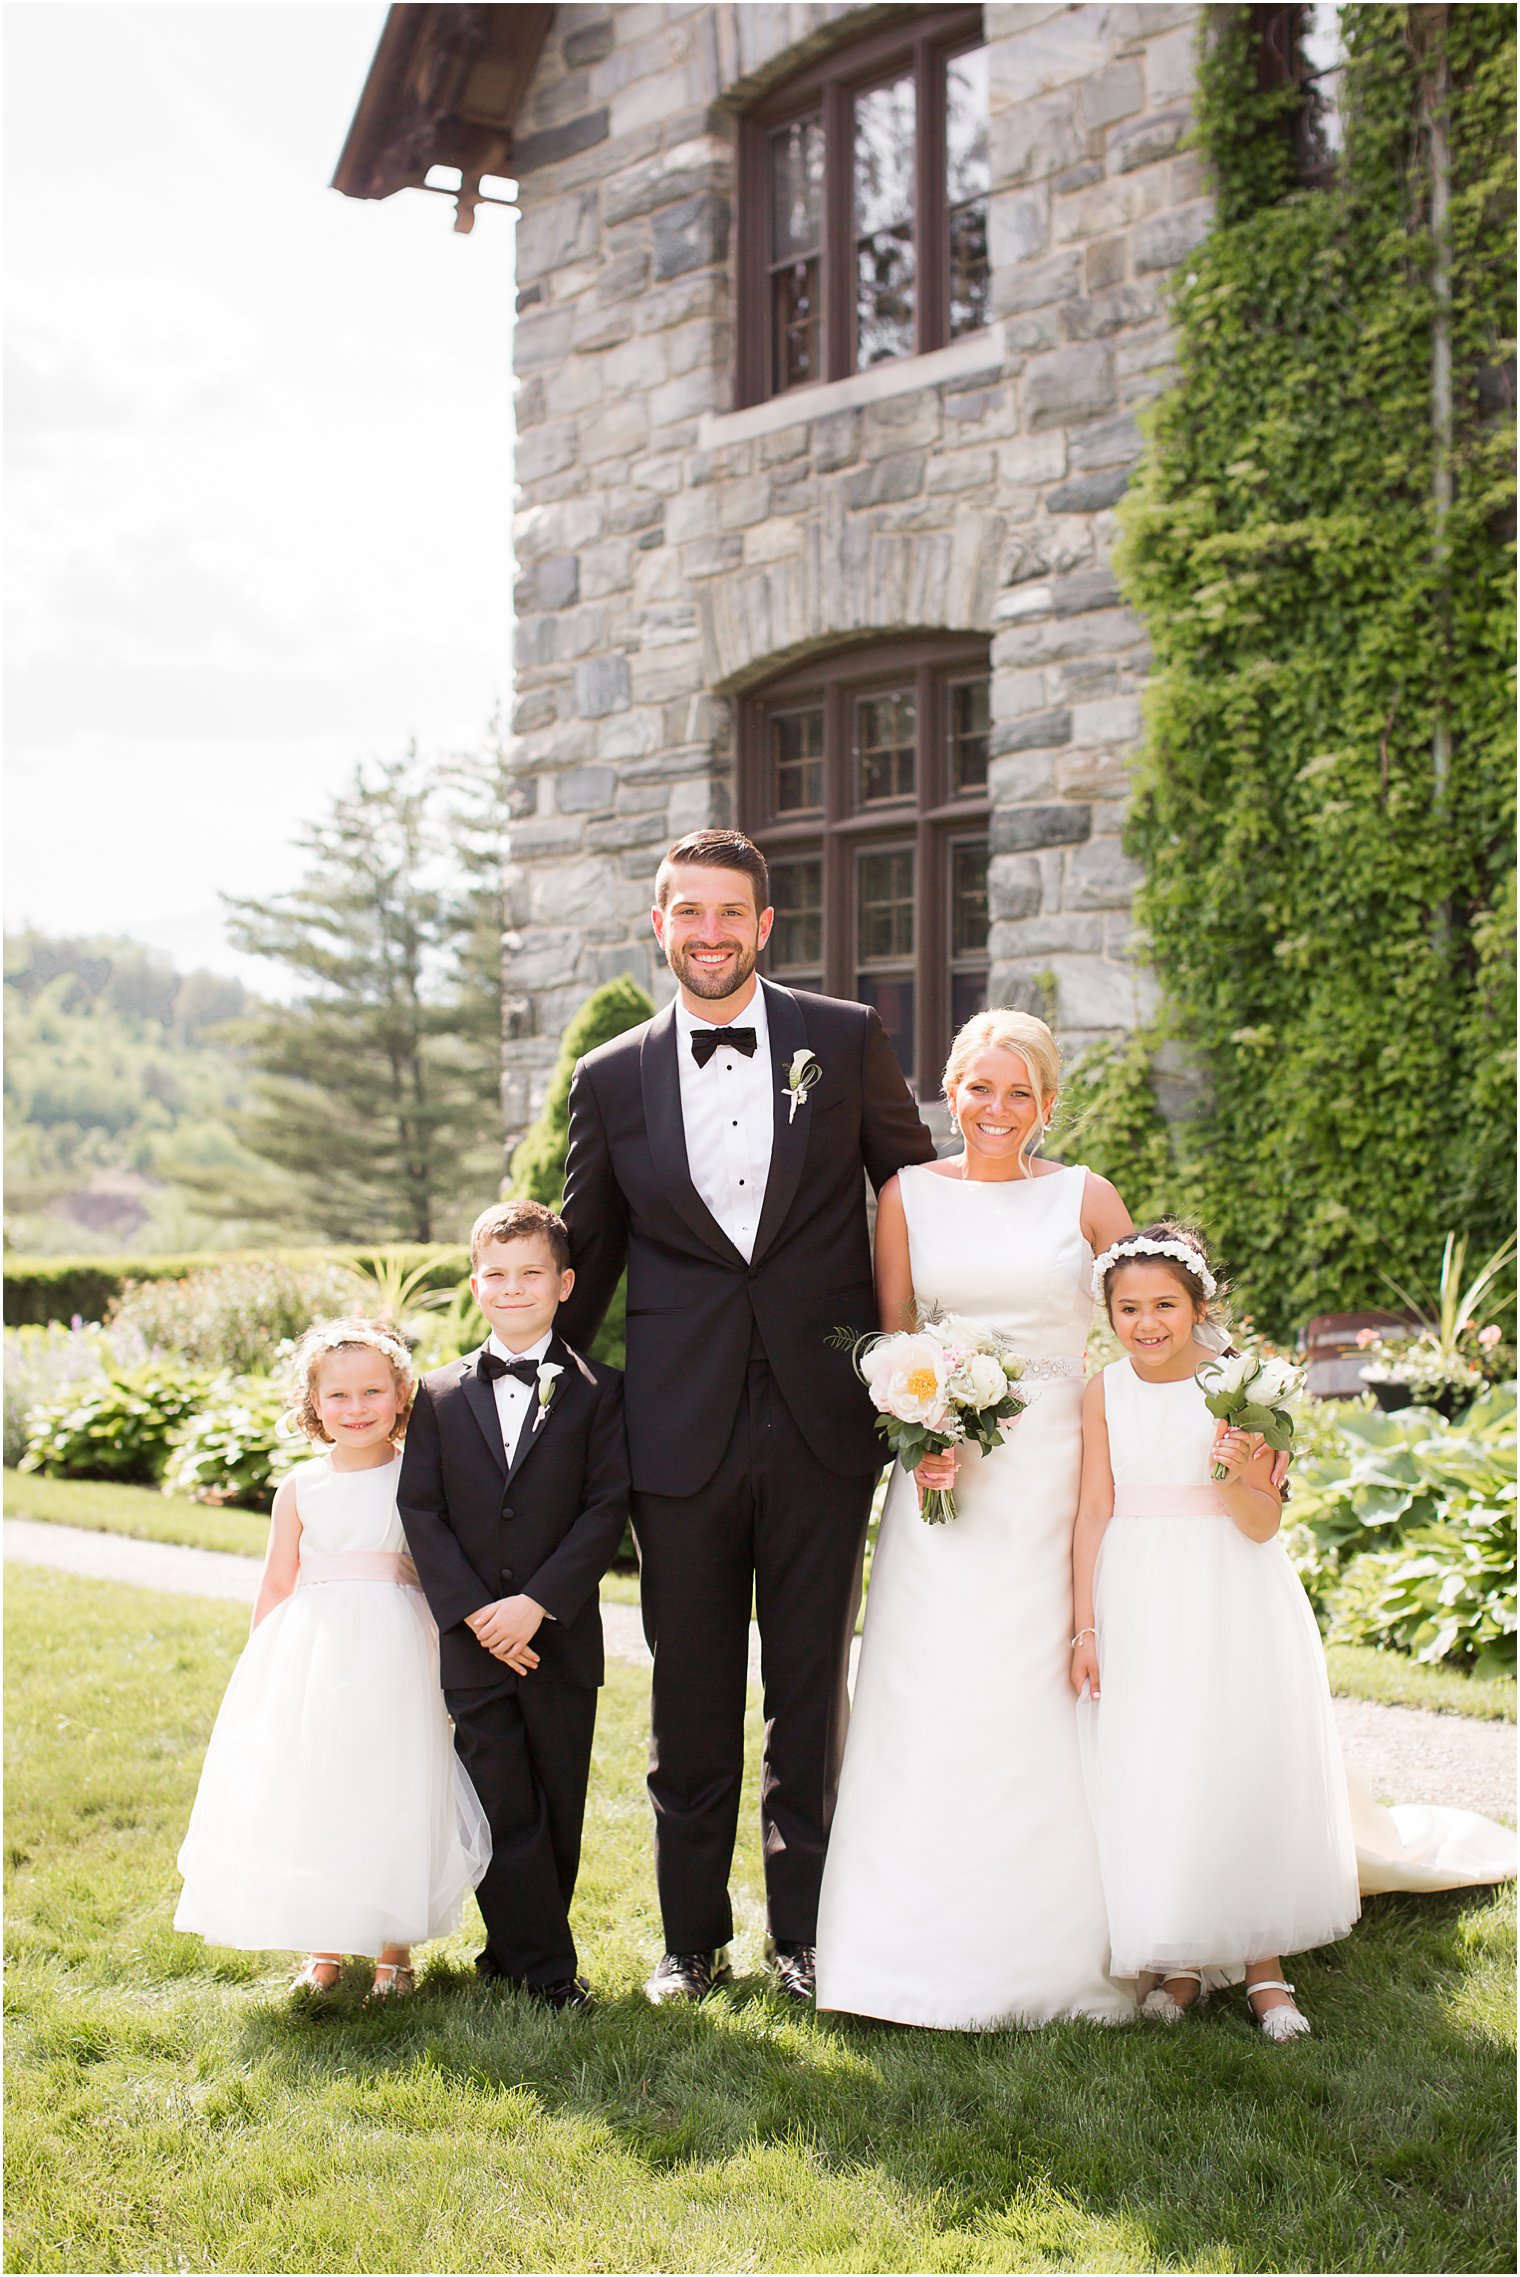 Formal photo of bride, groom, ring bearer, and flower girls